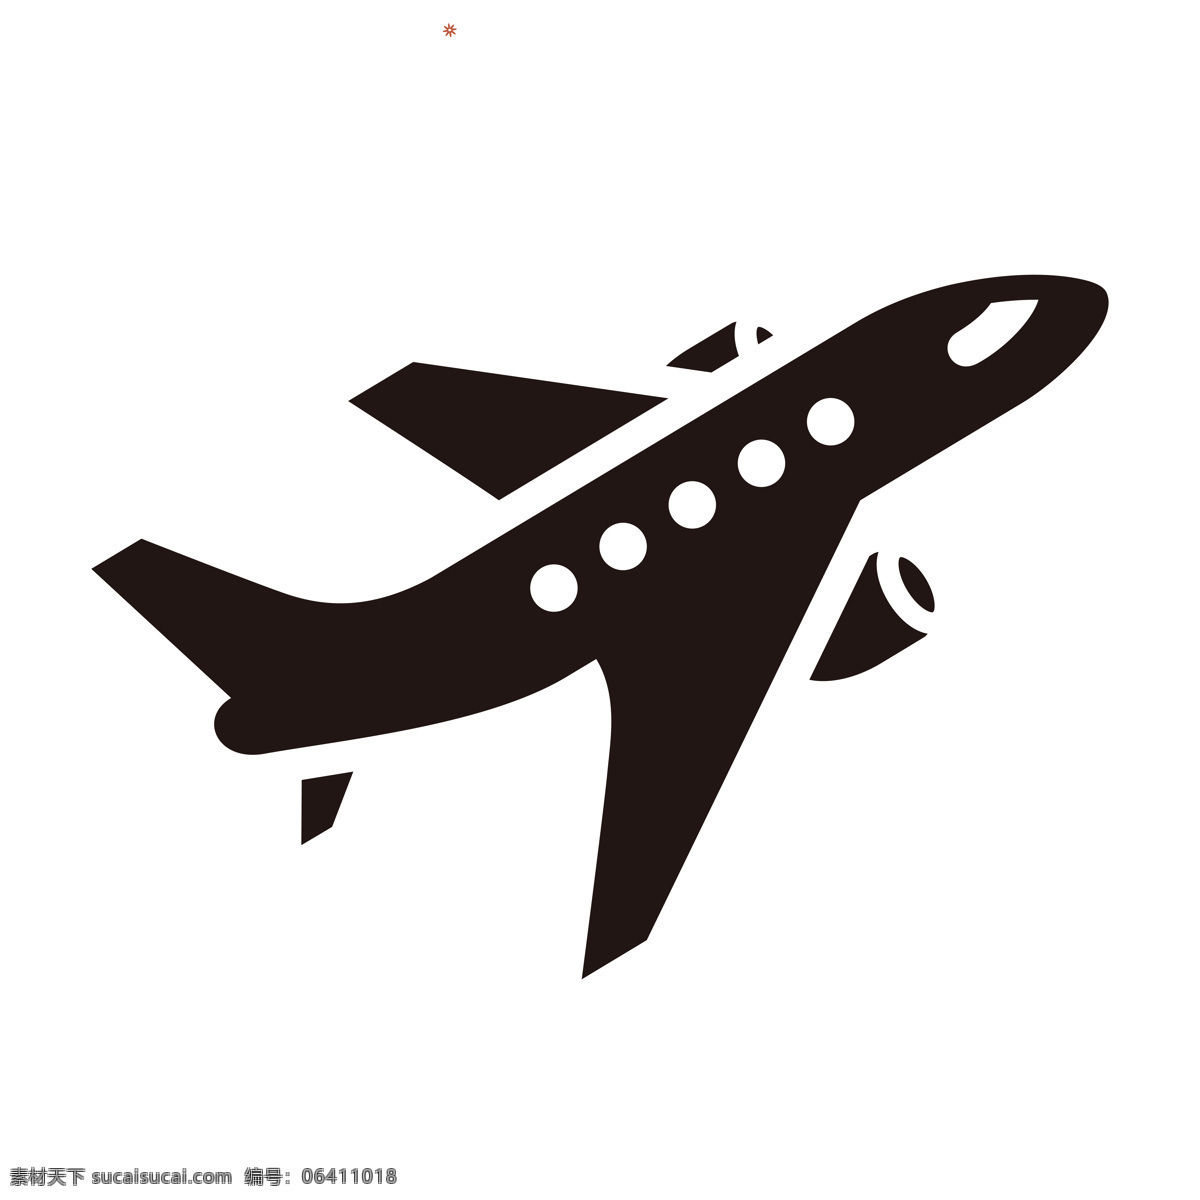 飞机剪影图片 飞机 航空飞机 航空 飞机剪影 剪影 标志图标 网页小图标